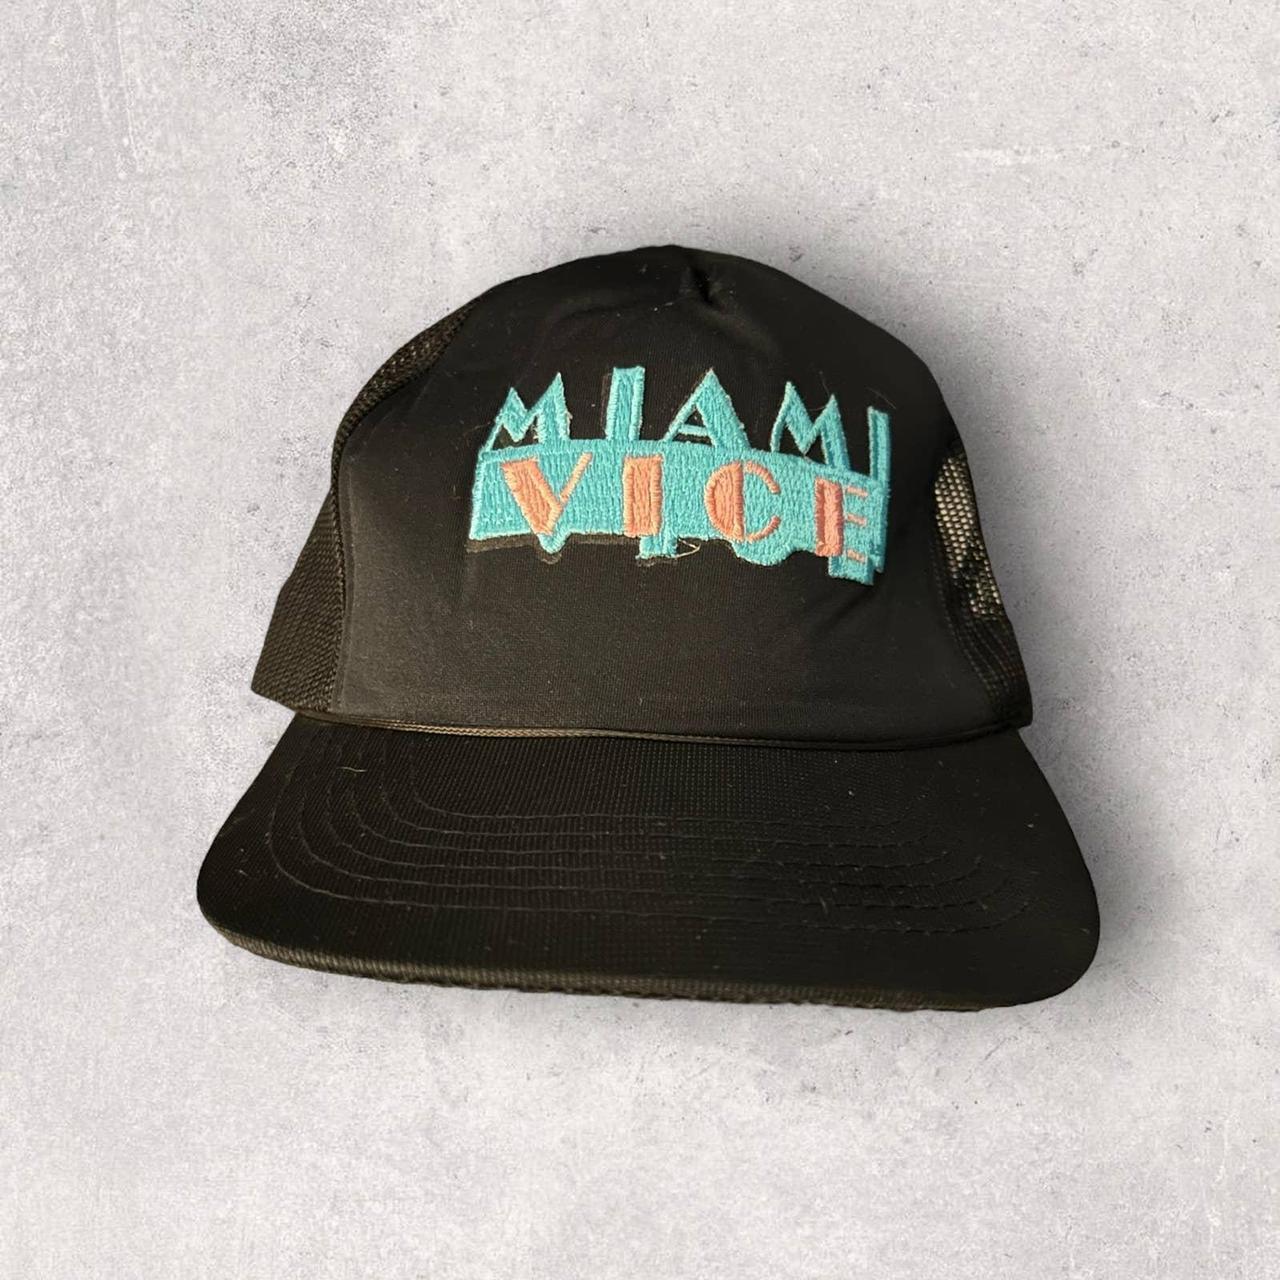 Miami Vice Snapback